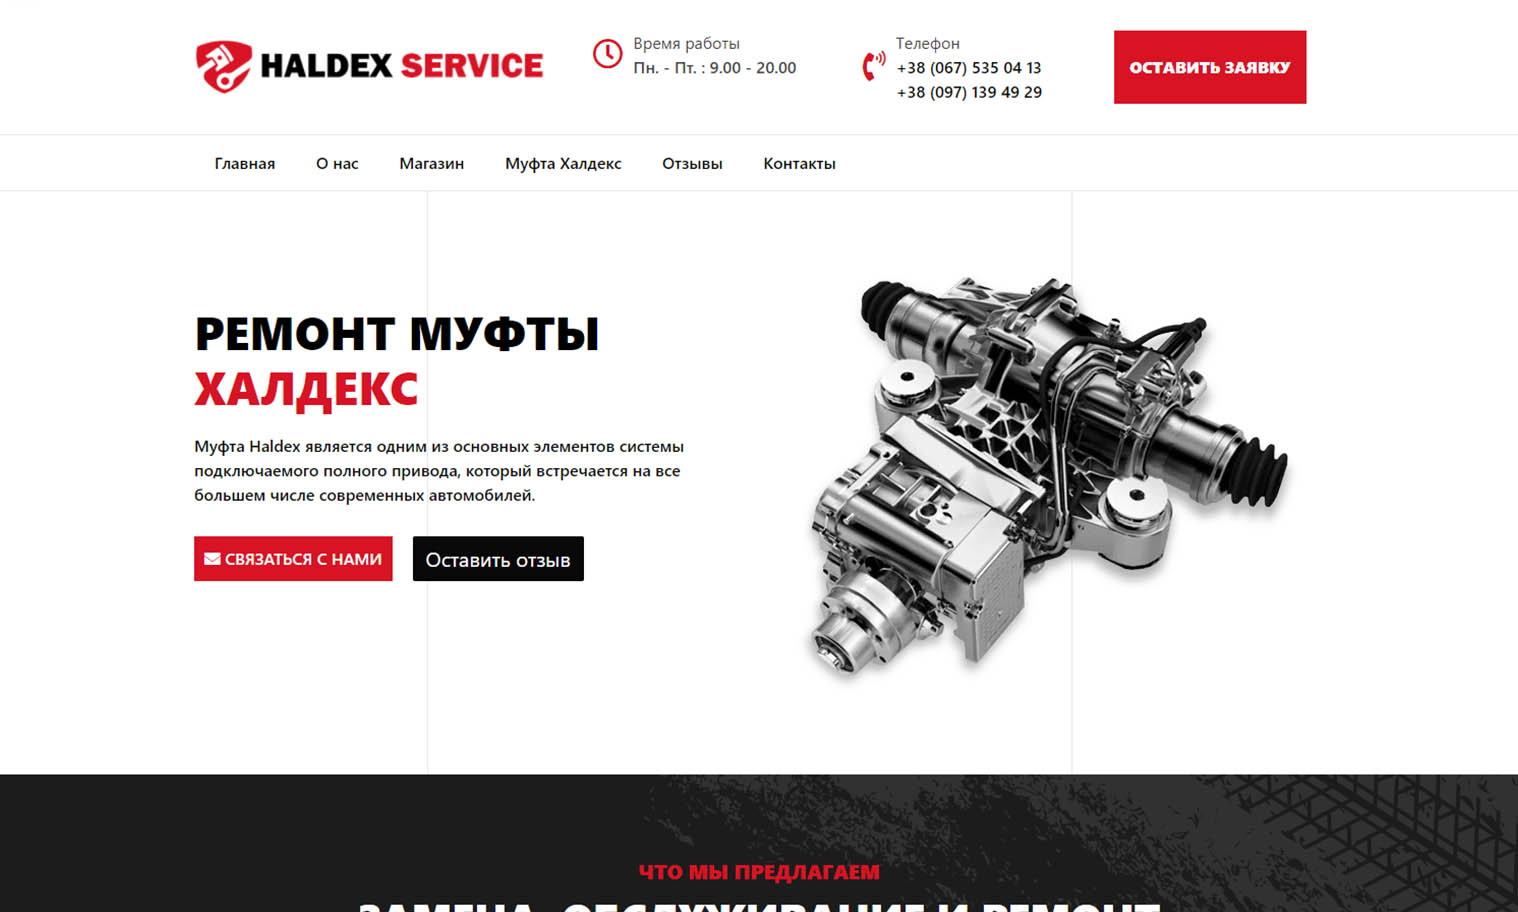 Haldex Service